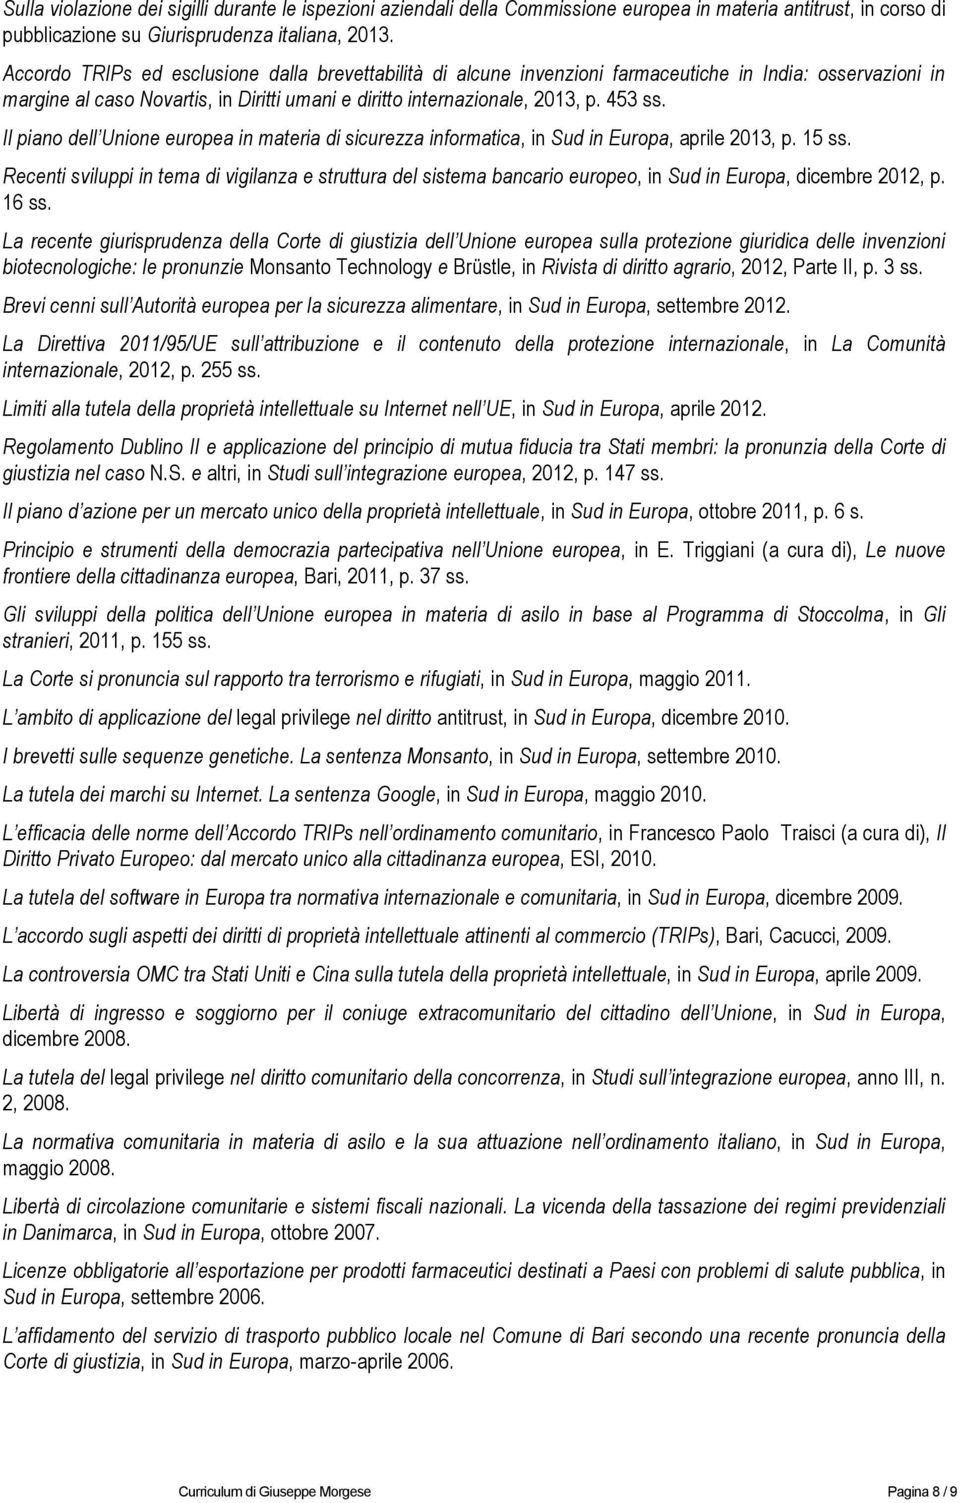 Il piano dell Unione europea in materia di sicurezza informatica, in Sud in Europa, aprile 2013, p. 15 ss.